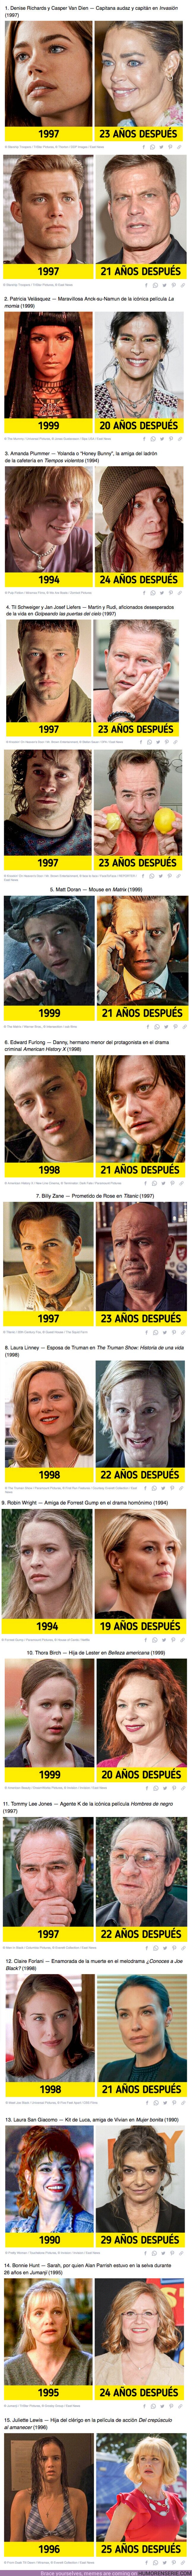 69576 - GALERÍA: Cómo se ven ahora 15+ actores de películas de los años 90 que aún siguen siendo populares